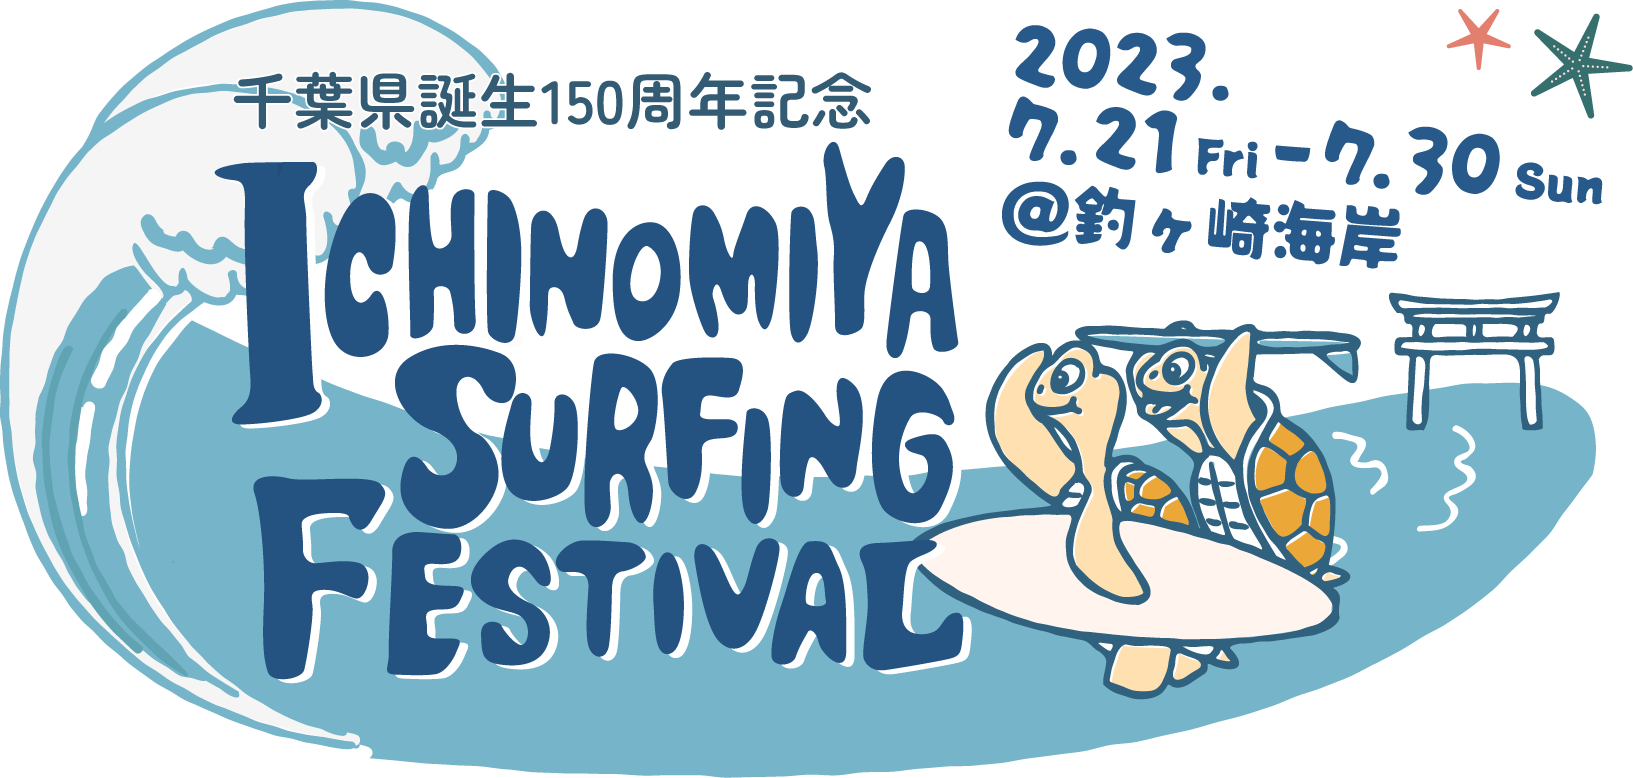 ICHINOMIYA SURFING FESTIVAL